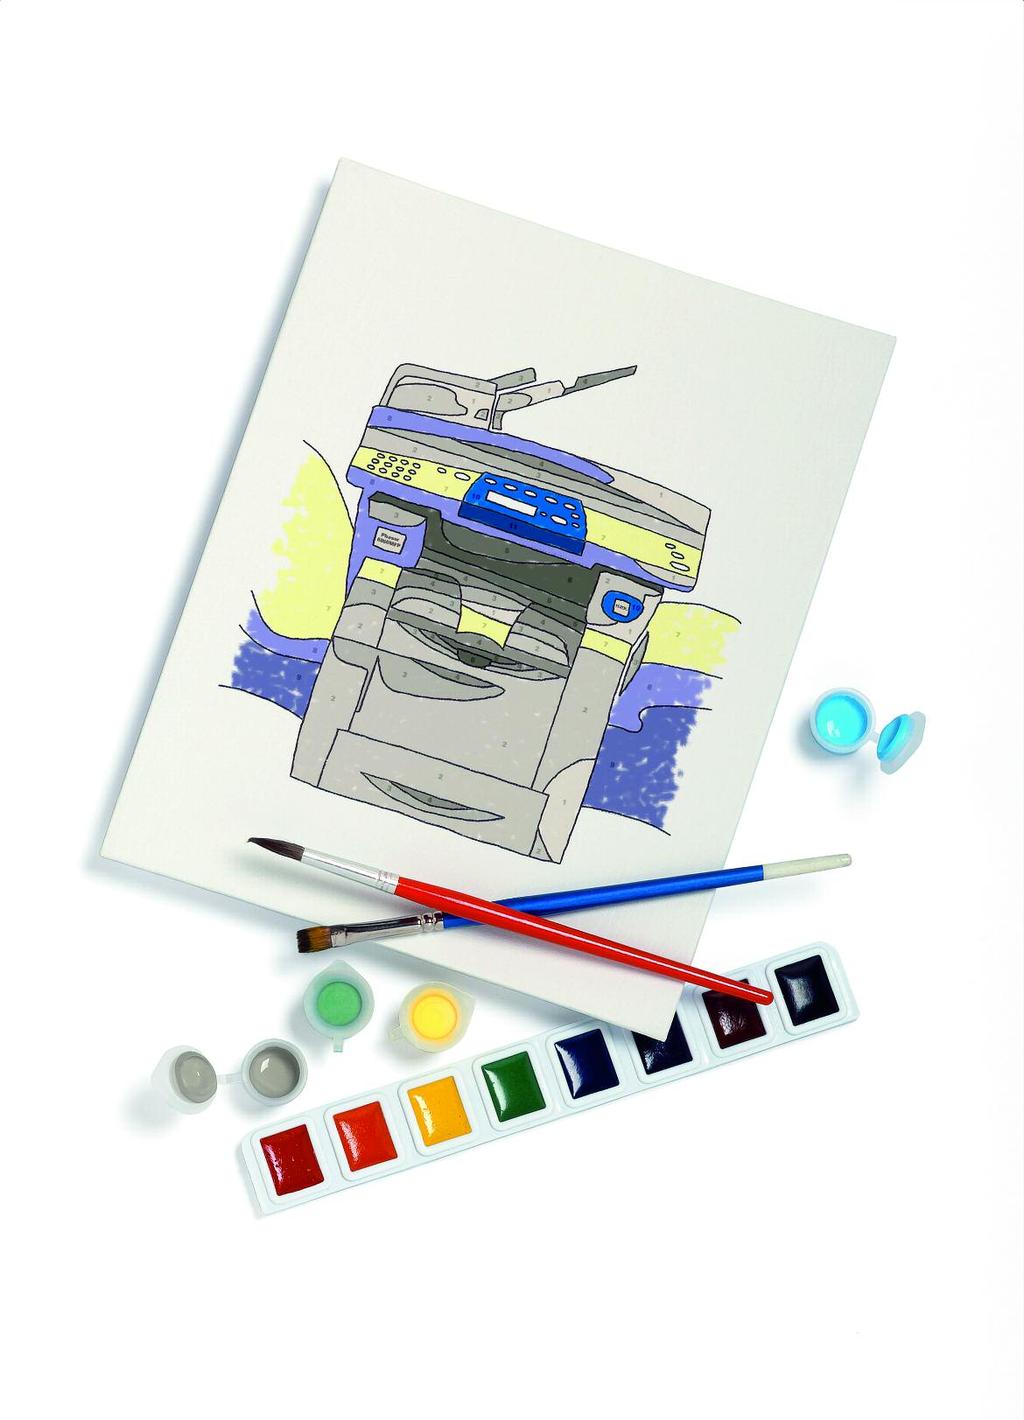 Meer mogelijkheden in kleur. Xerox Solid Ink heeft een groter bereik aan kleuren dan de meeste lasersystemen.